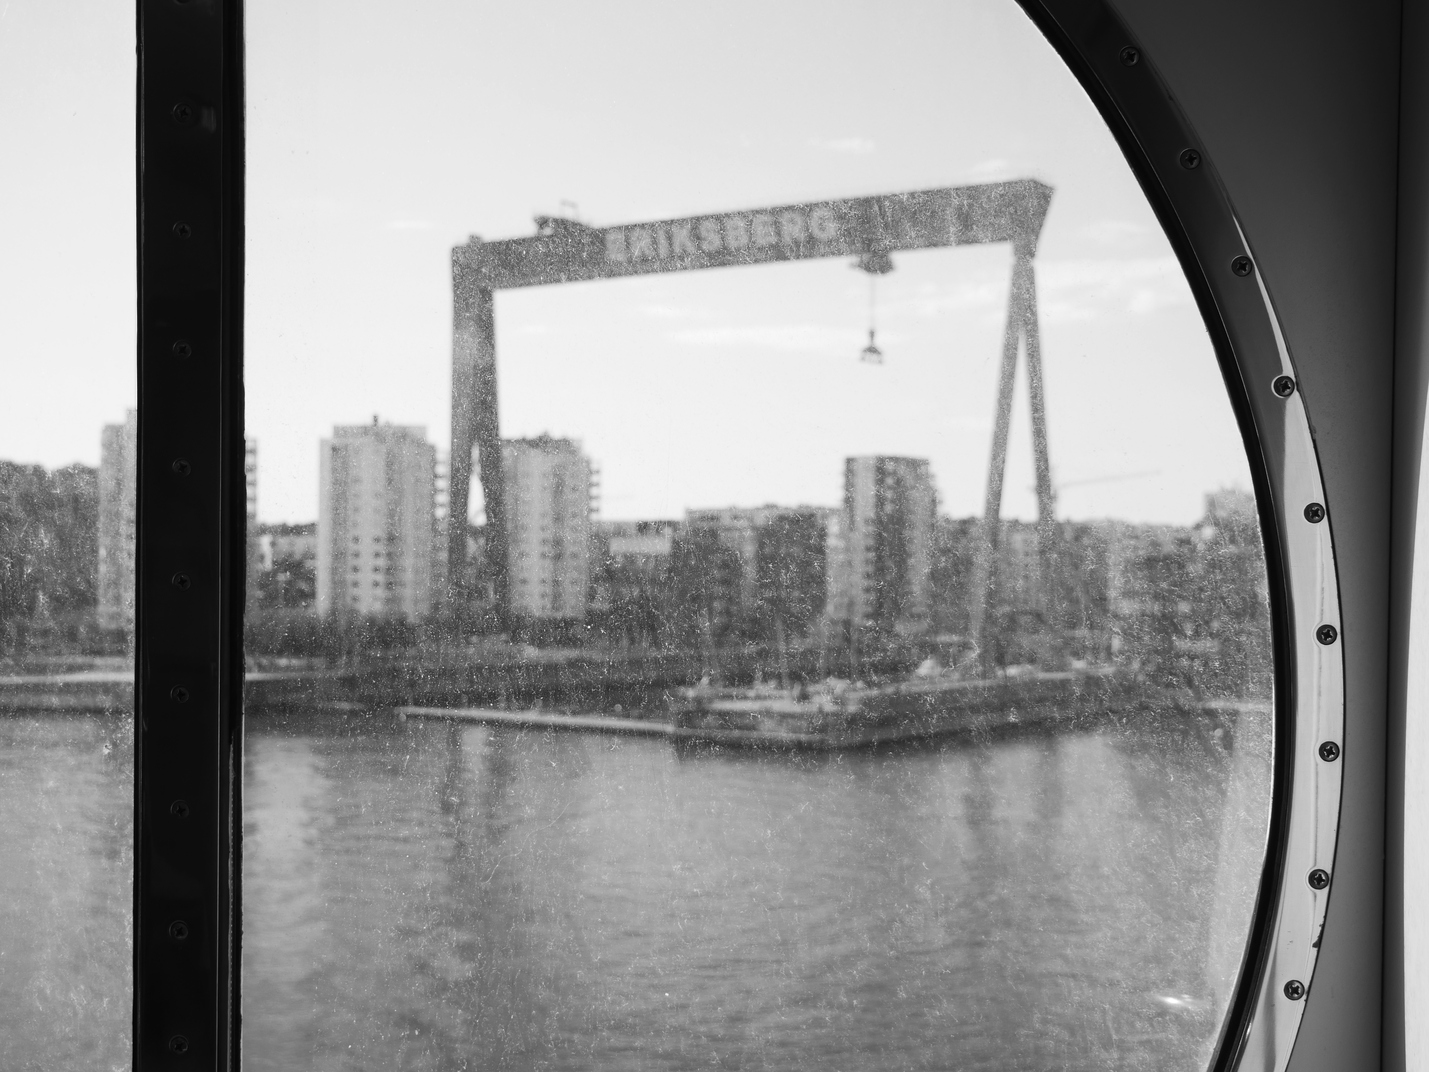 La gru di Eriksberg vista dalla nave Stena Germanica, in procinto di salpare